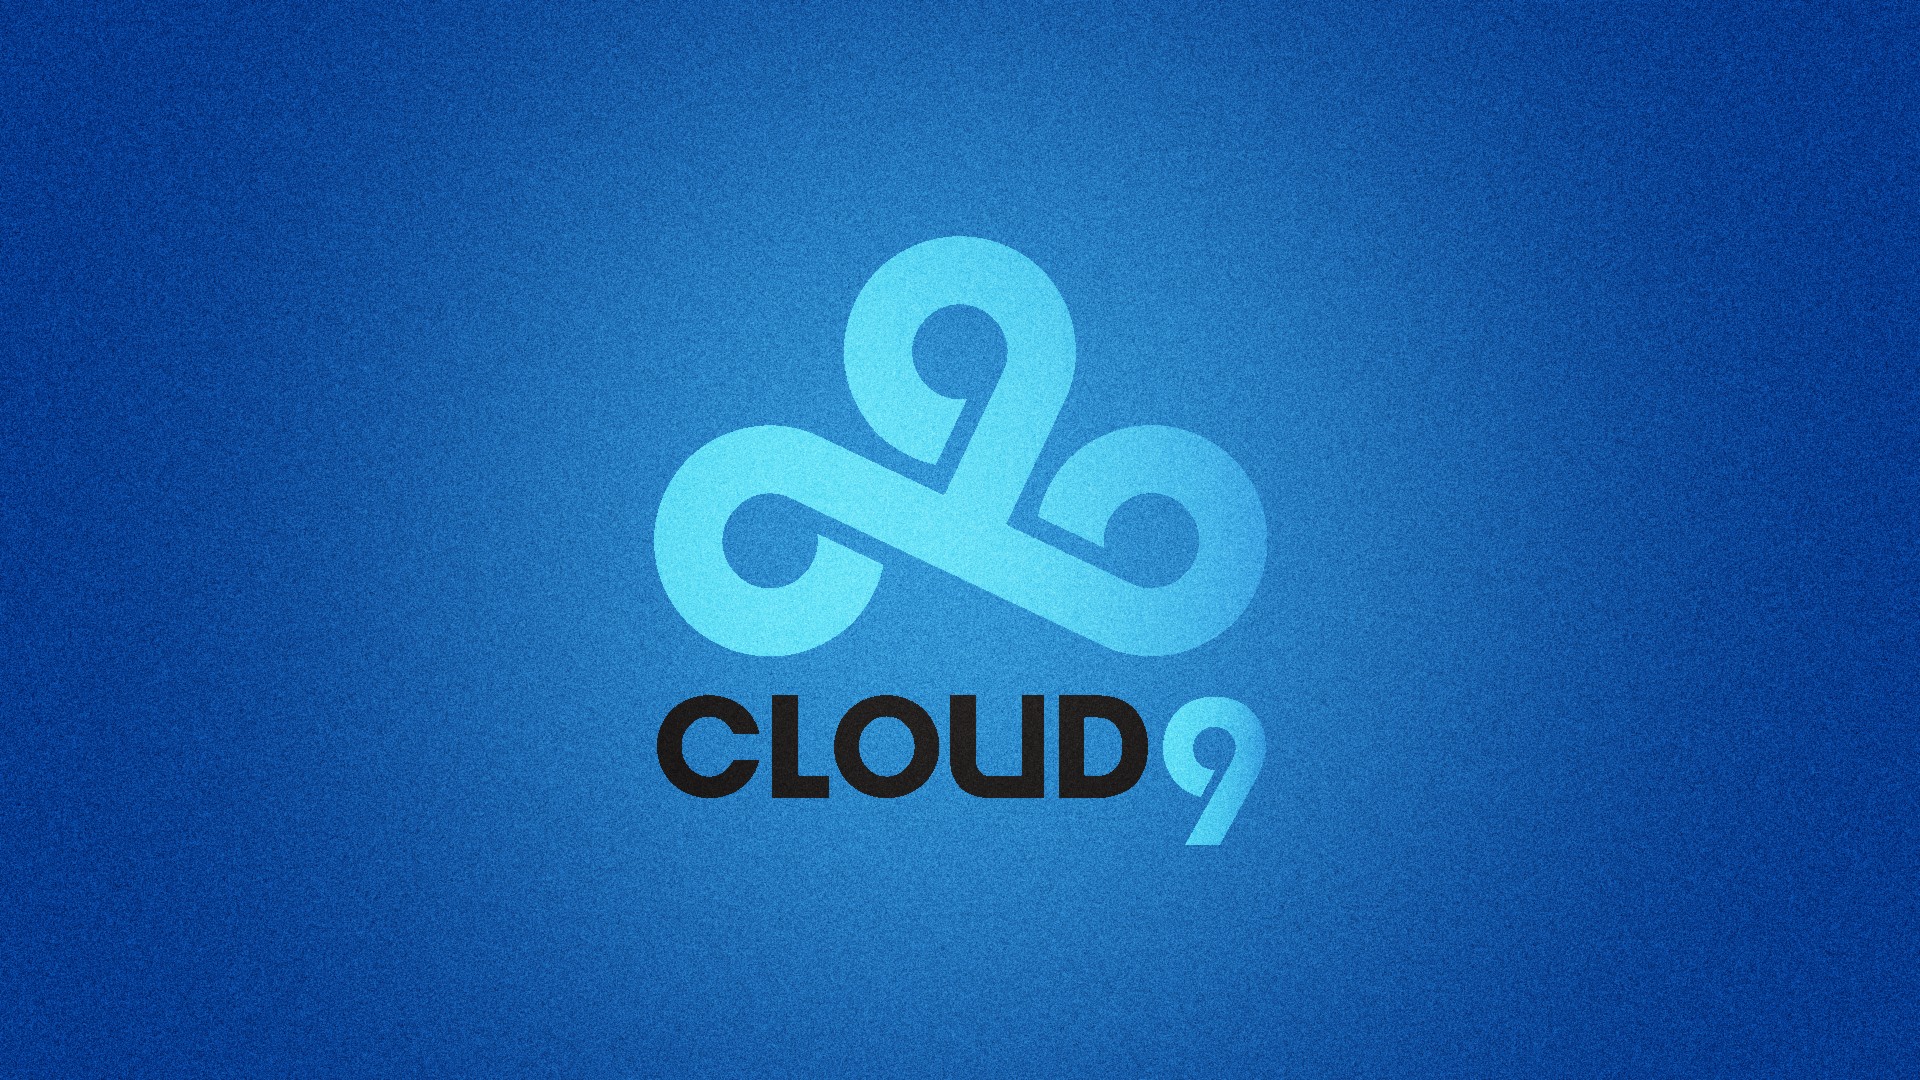 cloud 9 wallpaper 1920x1080,blue,logo,font,text,azure